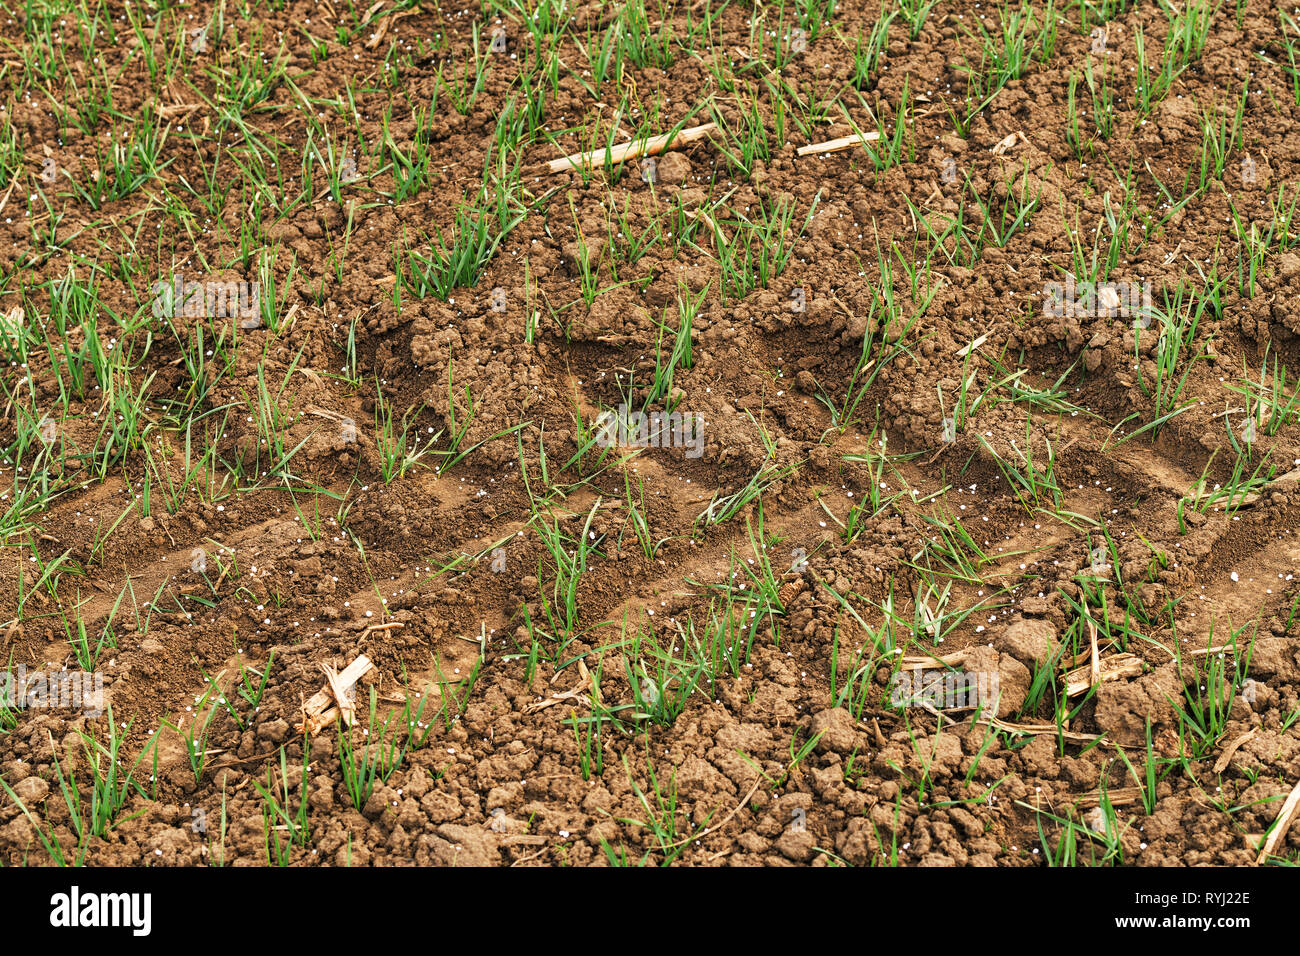 Engrais NPK granulés de germes de blé synthétique dans le champ après l'application au début du printemps pour fertiliser la terre avec de l'azote du sol les nutriments, phos Banque D'Images